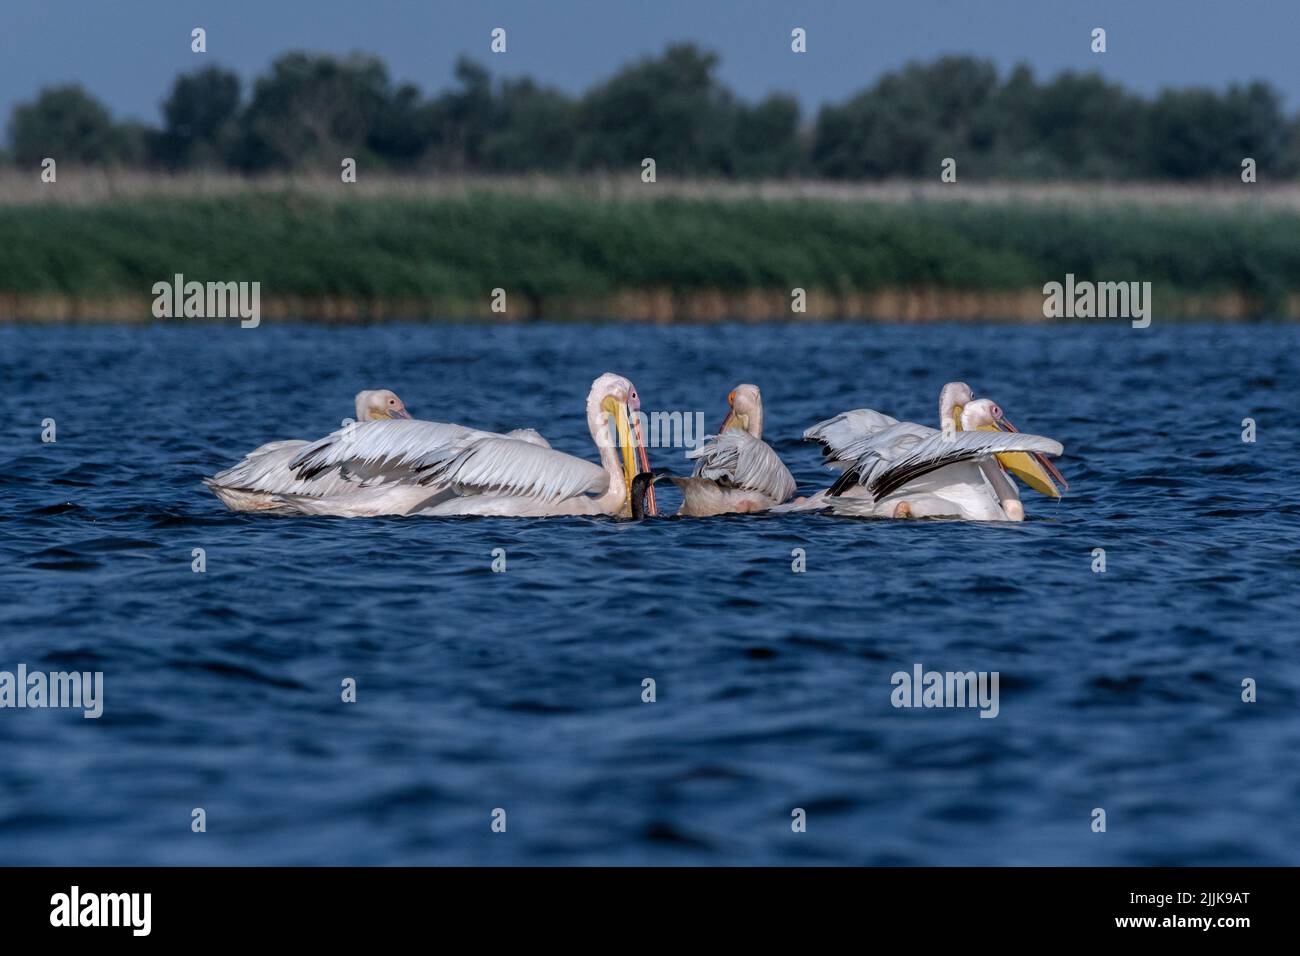 Pelicans (Pelecanus onocrotalus). Romania Stock Photo